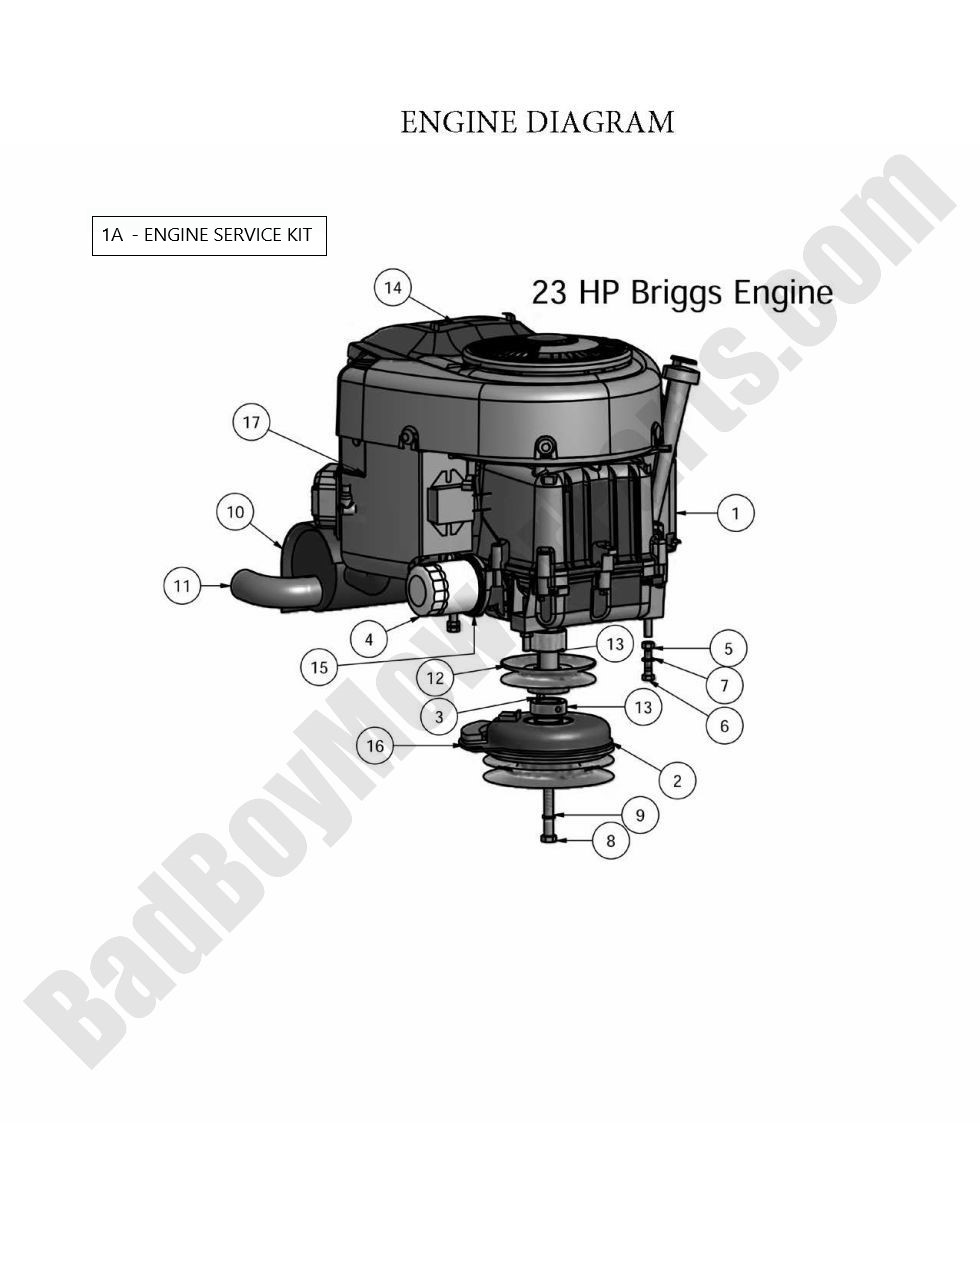 2010 CZT Engine - Briggs